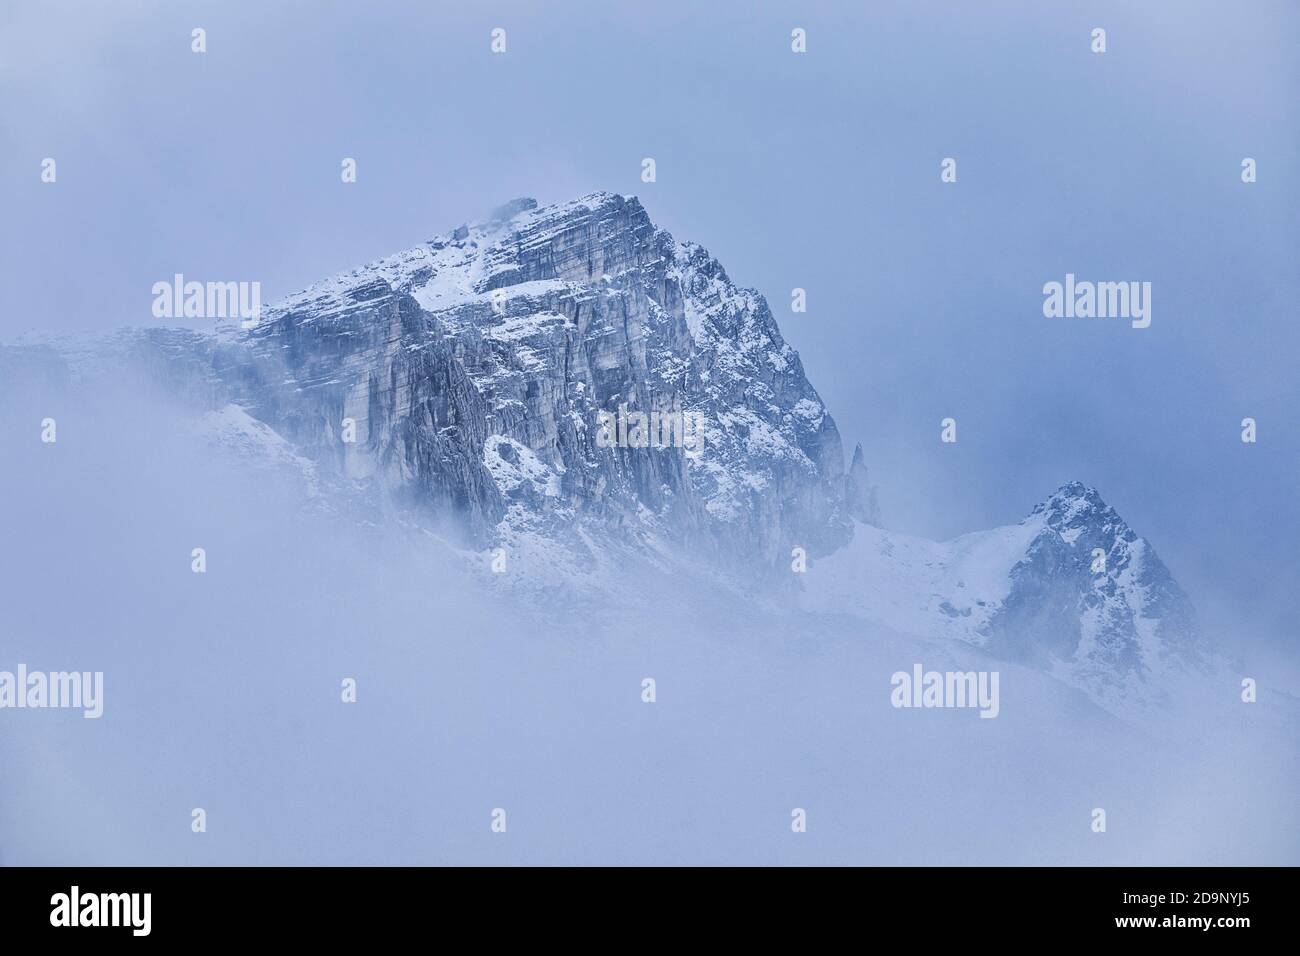 Monte Settsass, Dolomiti, vista dall'altopiano di Pralongià, Belluno, Veneto, Italia Foto Stock